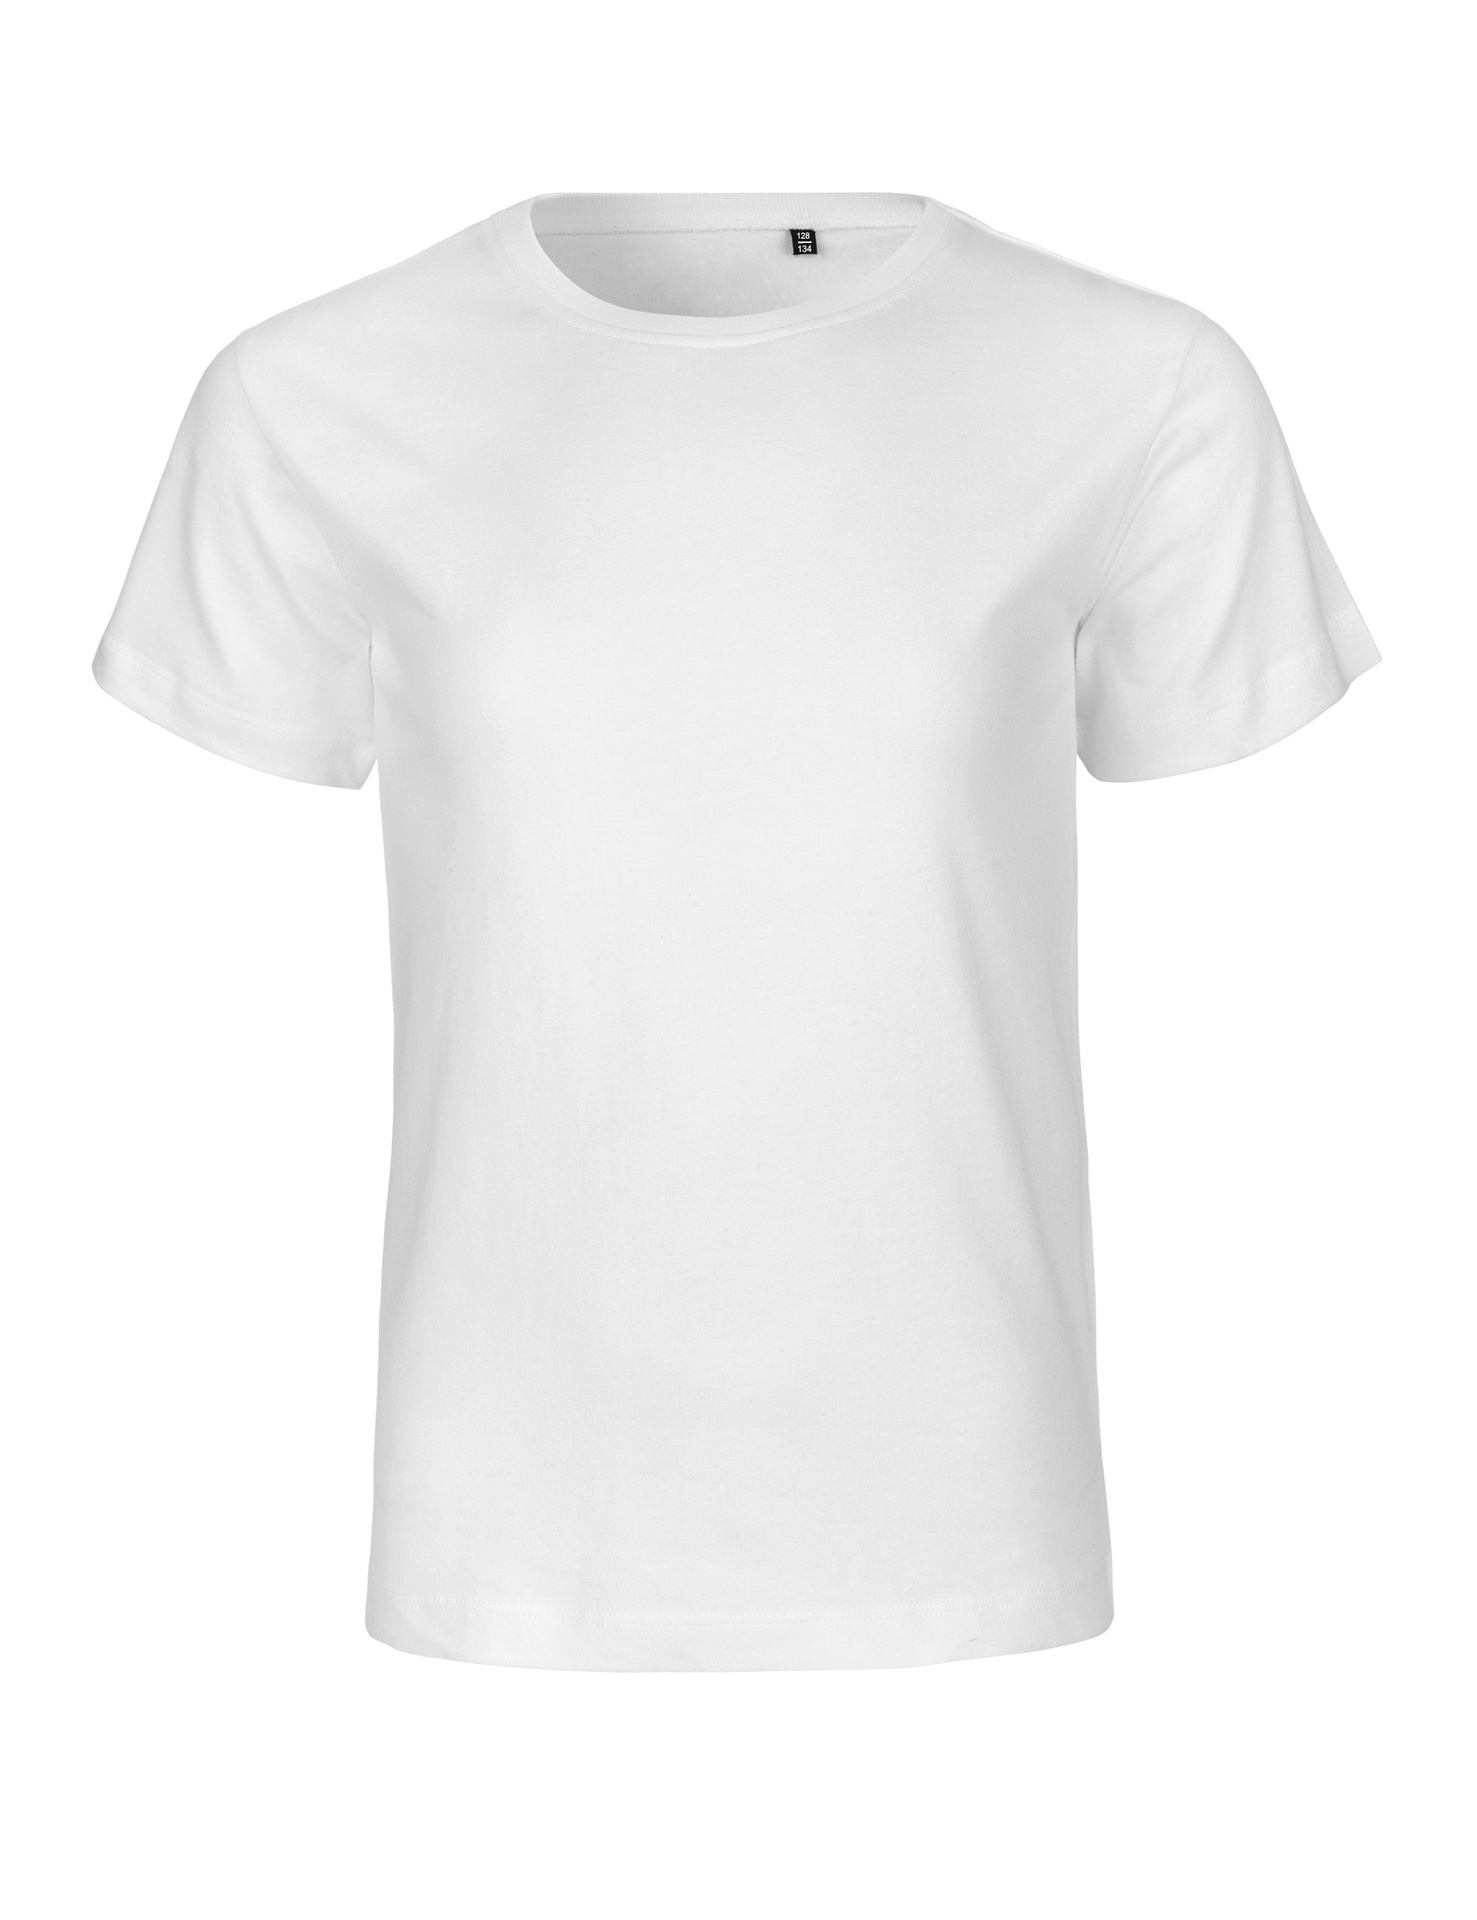 [PR/05961] Kids Tiger Cotton T-Shirt (White 01, 116/122 cm)